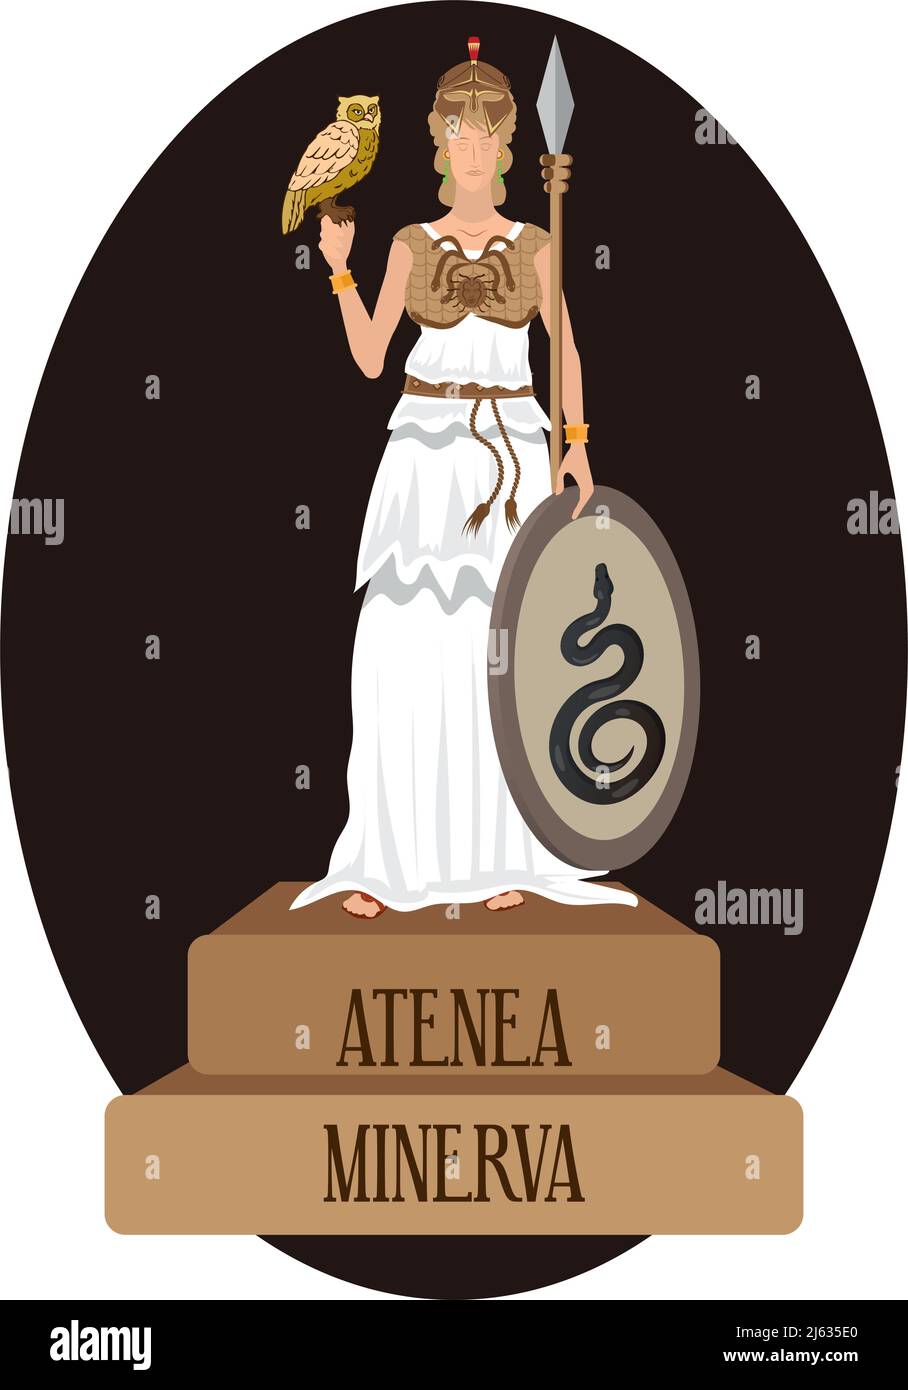 Vecteur d'illustration isolé des dieux romains et grecs, Athenea, Minerva Illustration de Vecteur